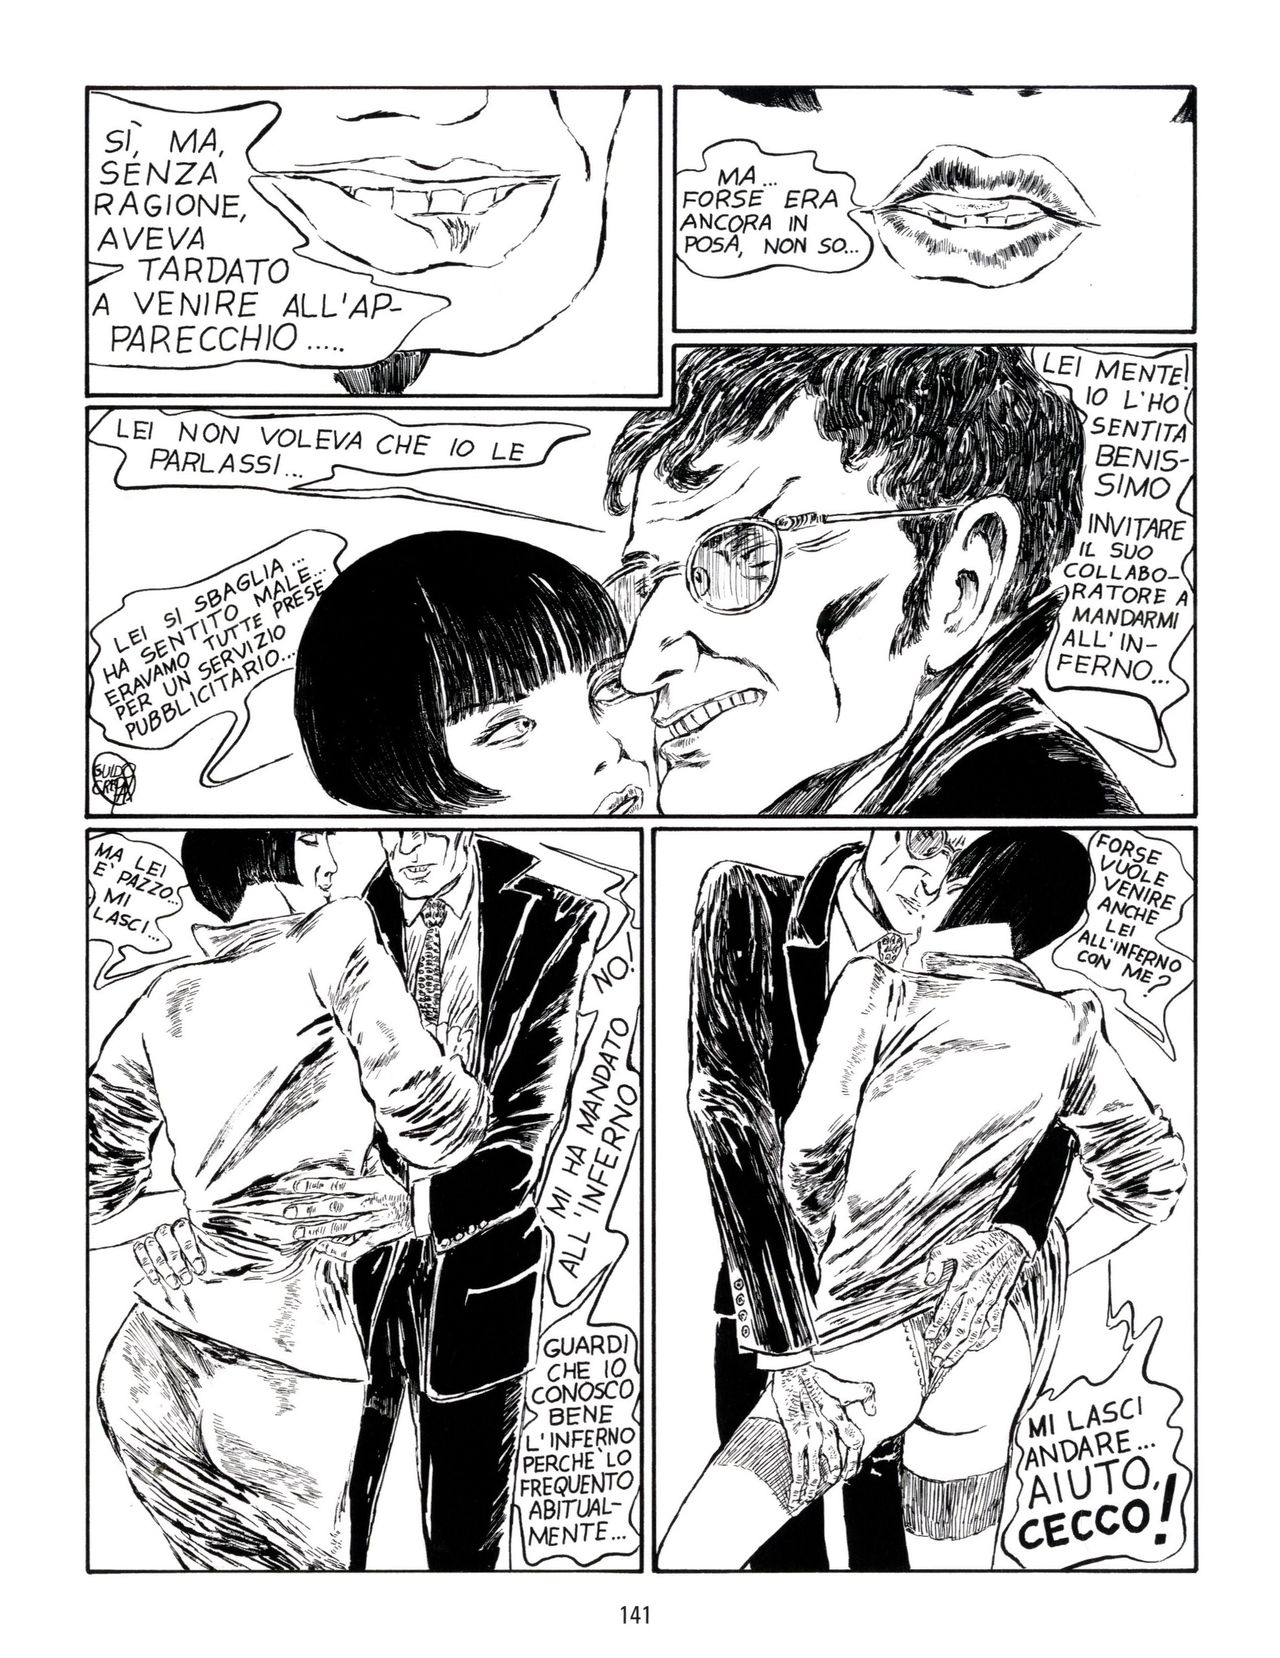 [Guido Crepax] Erotica Fumetti #29 : Arrivederci Valentina? : Verso una nuova vita [Italian] 144